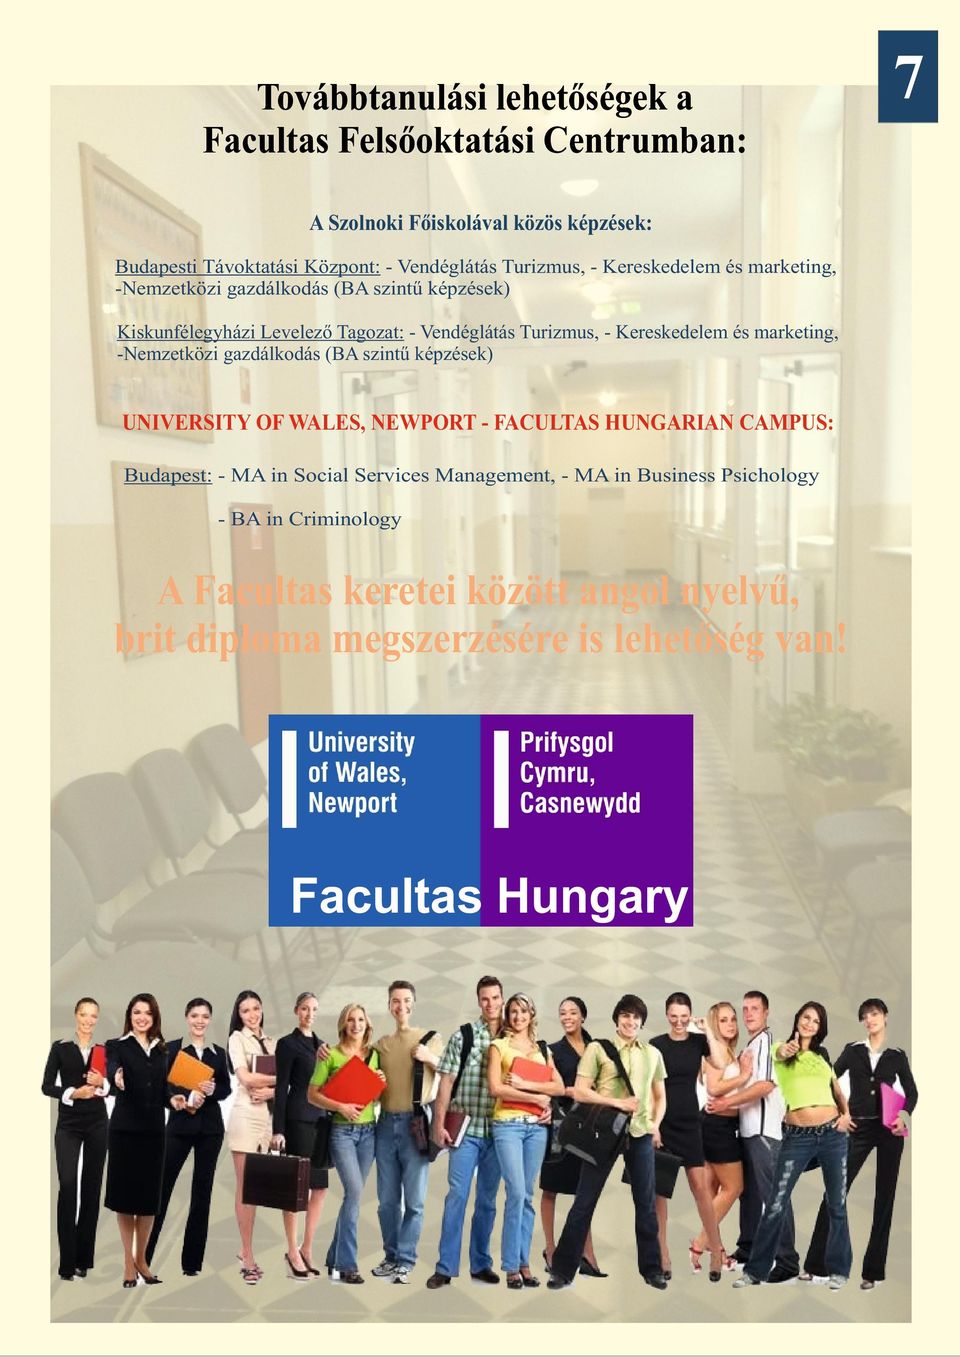 Kereskedelem és marketing, -Nemzetközi gazdálkodás (BA szintű képzések) UNIVERSITY OF WALES, NEWPORT - FACULTAS HUNGARIAN CAMPUS: Budapest: - MA in Social